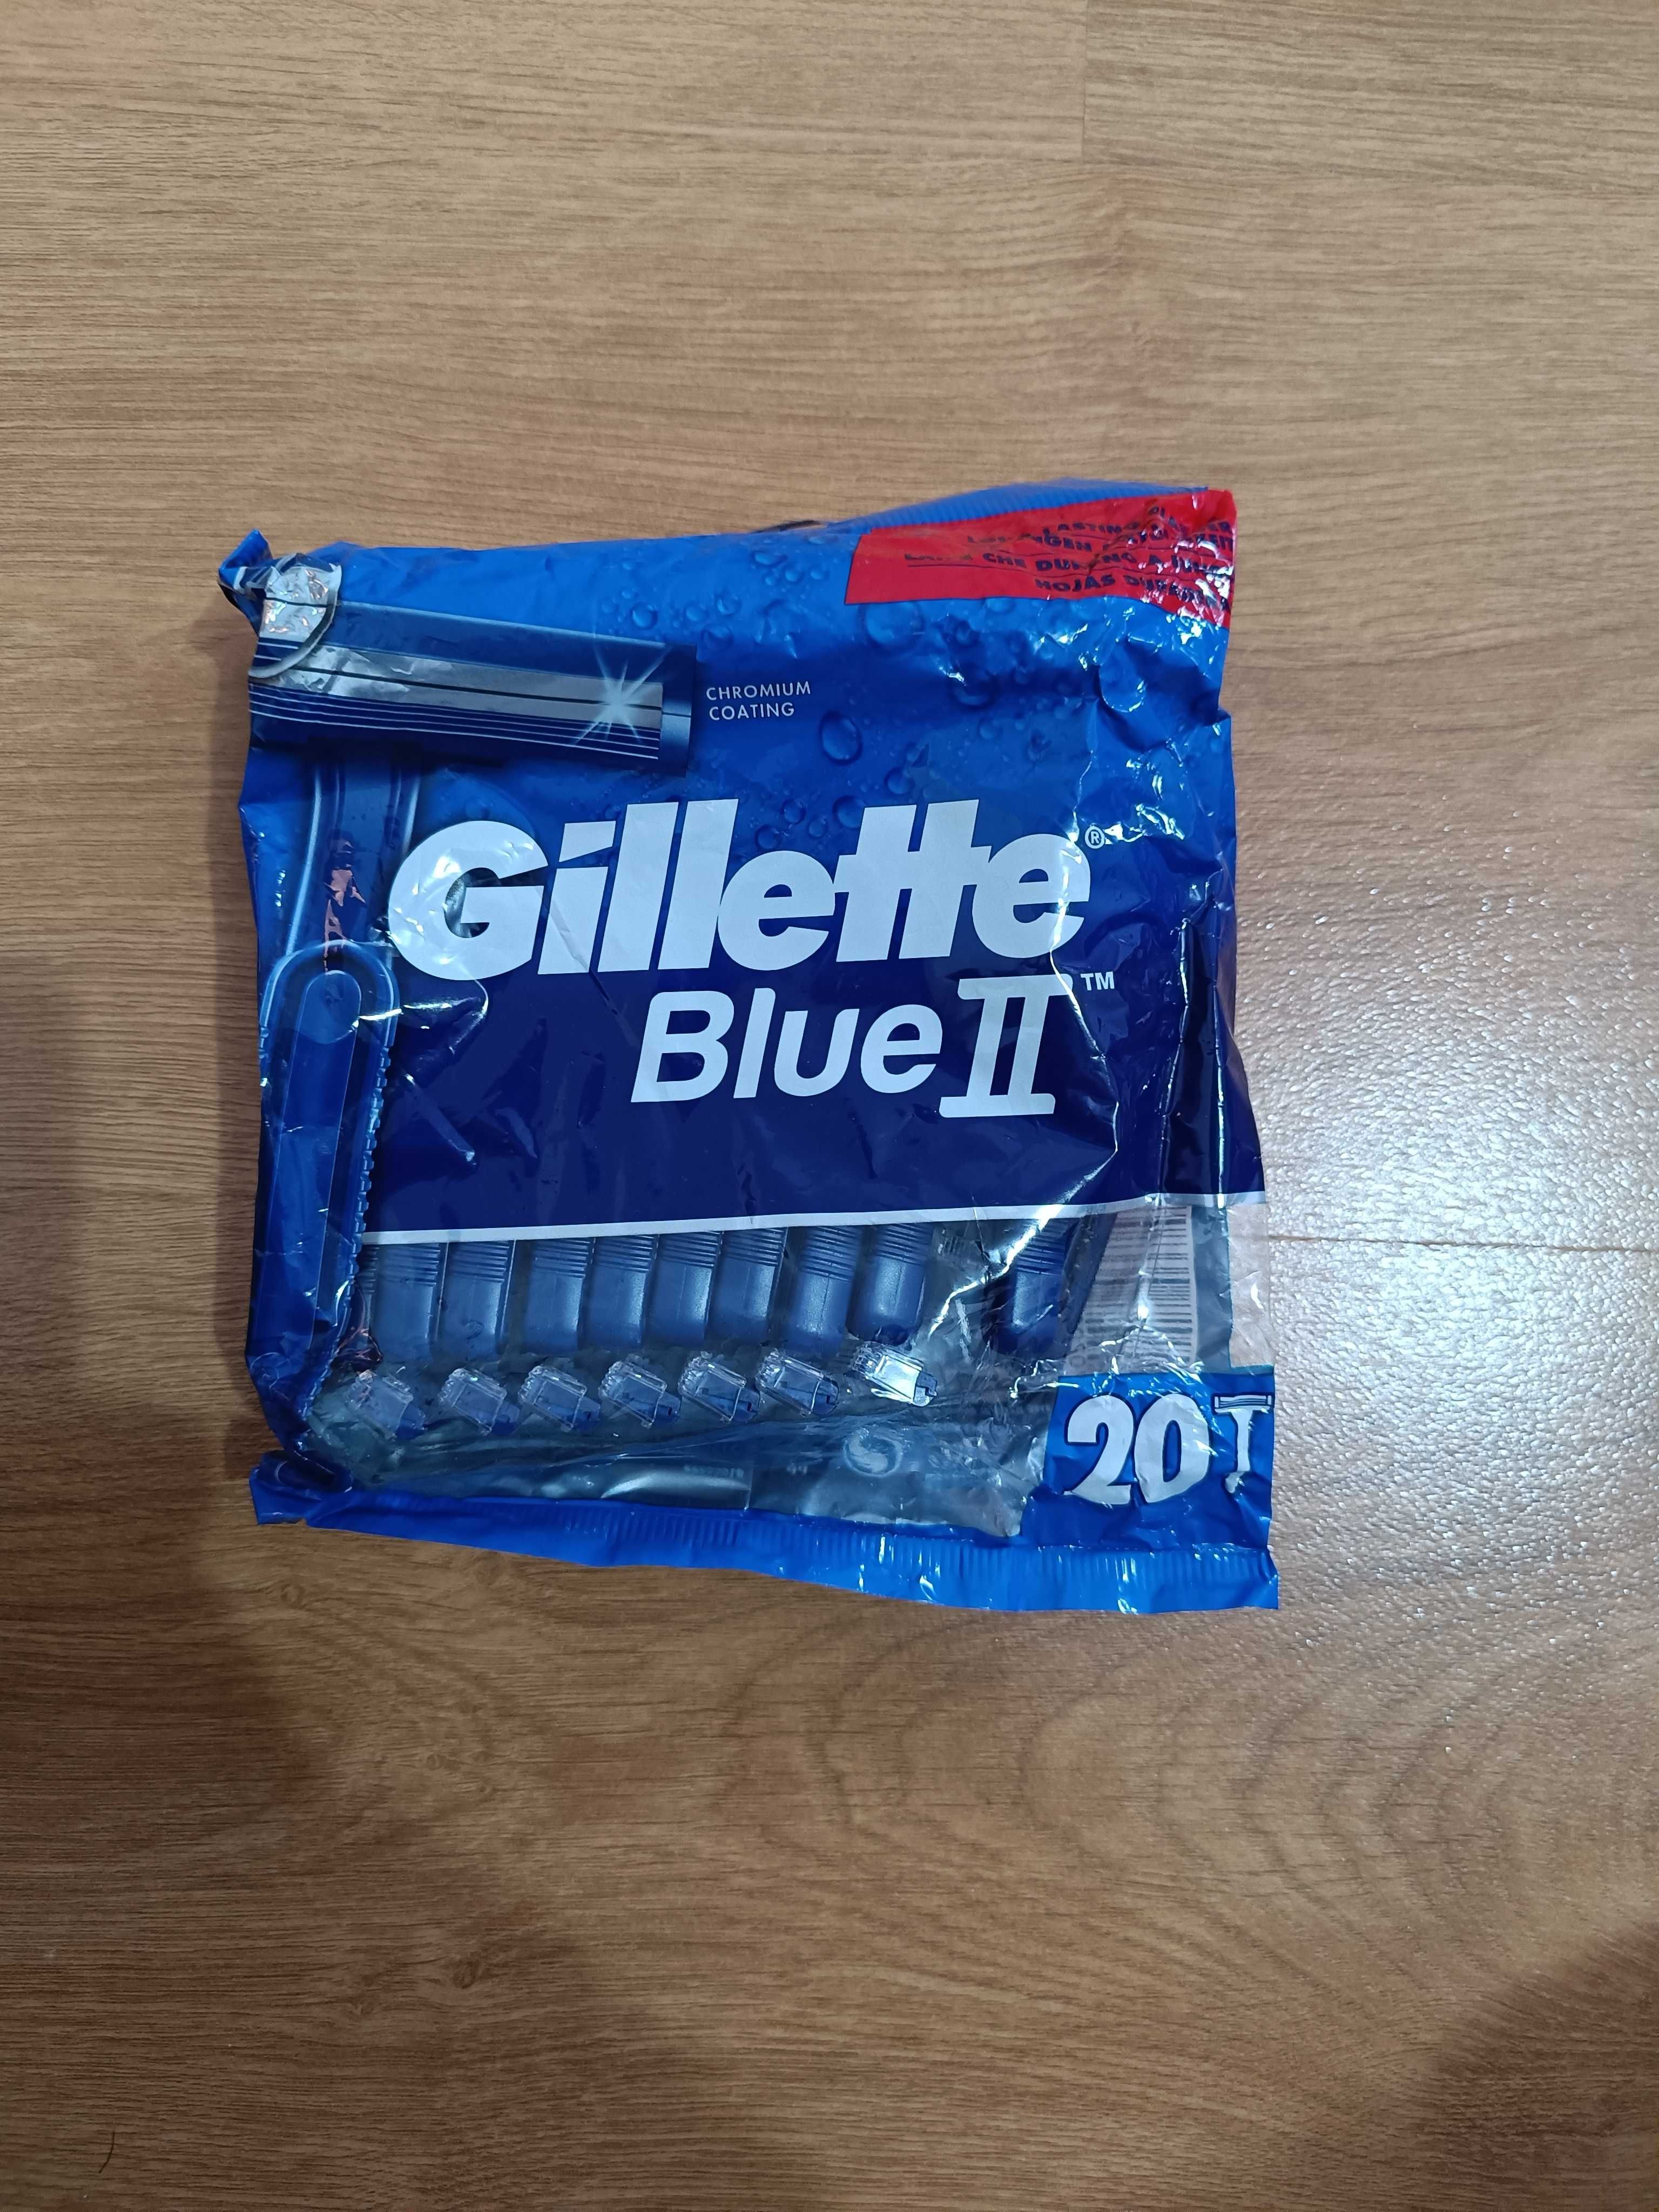 Aparat de ras Blue II, Gillette, 20 bucati